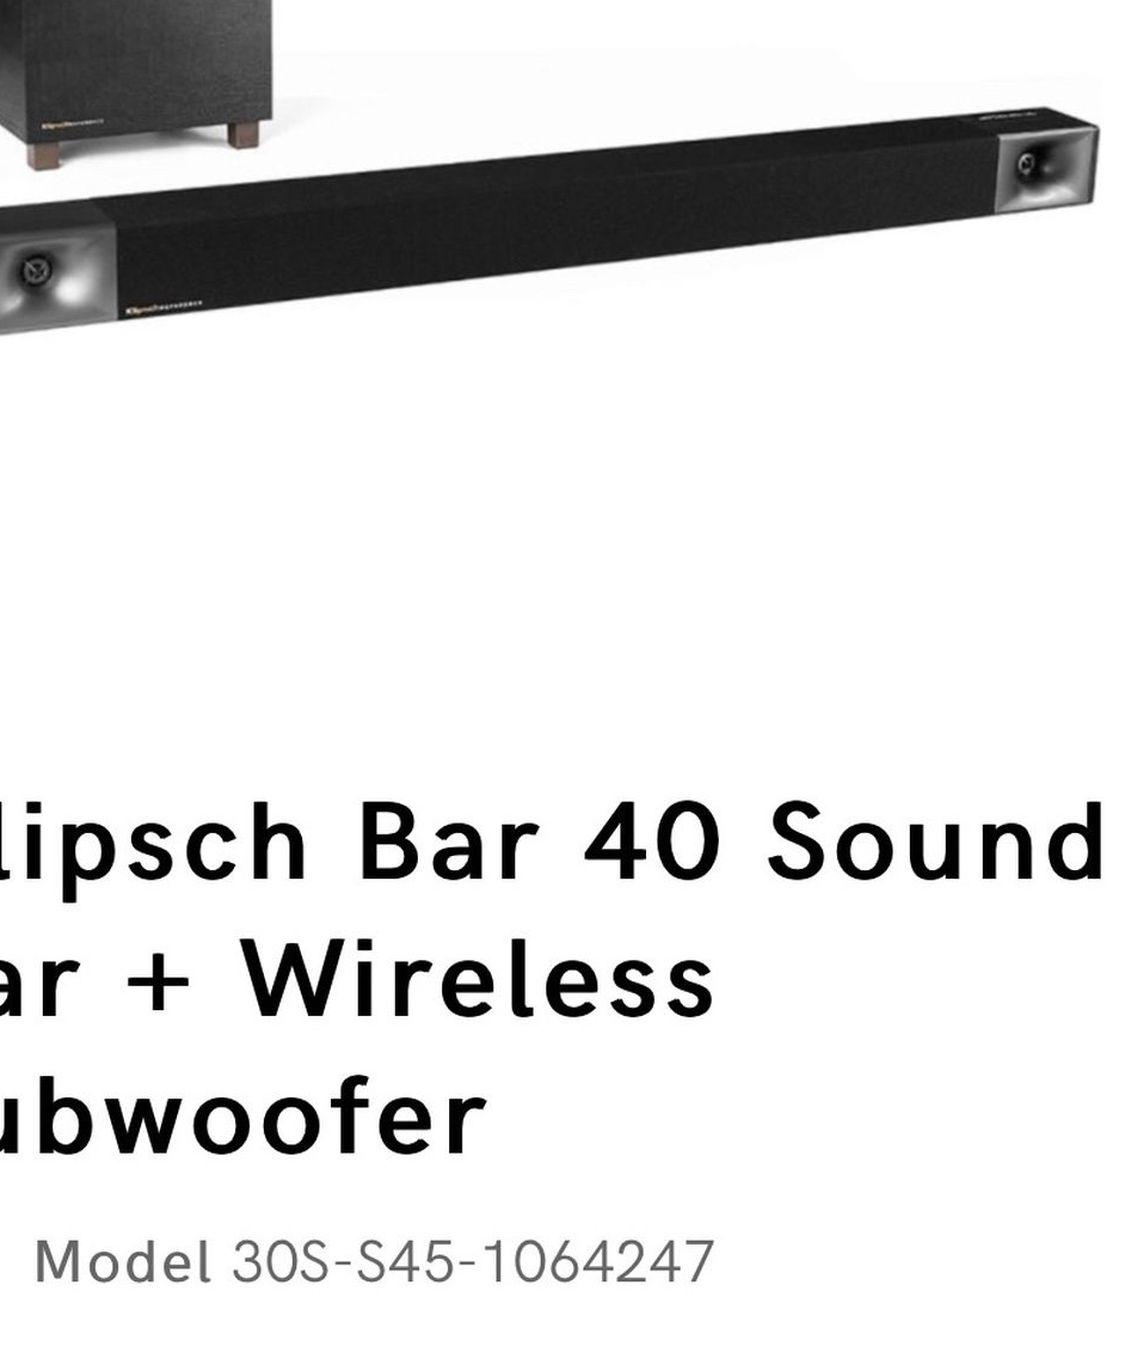 klipsch bar 40 sound bar + wireless subwoofer